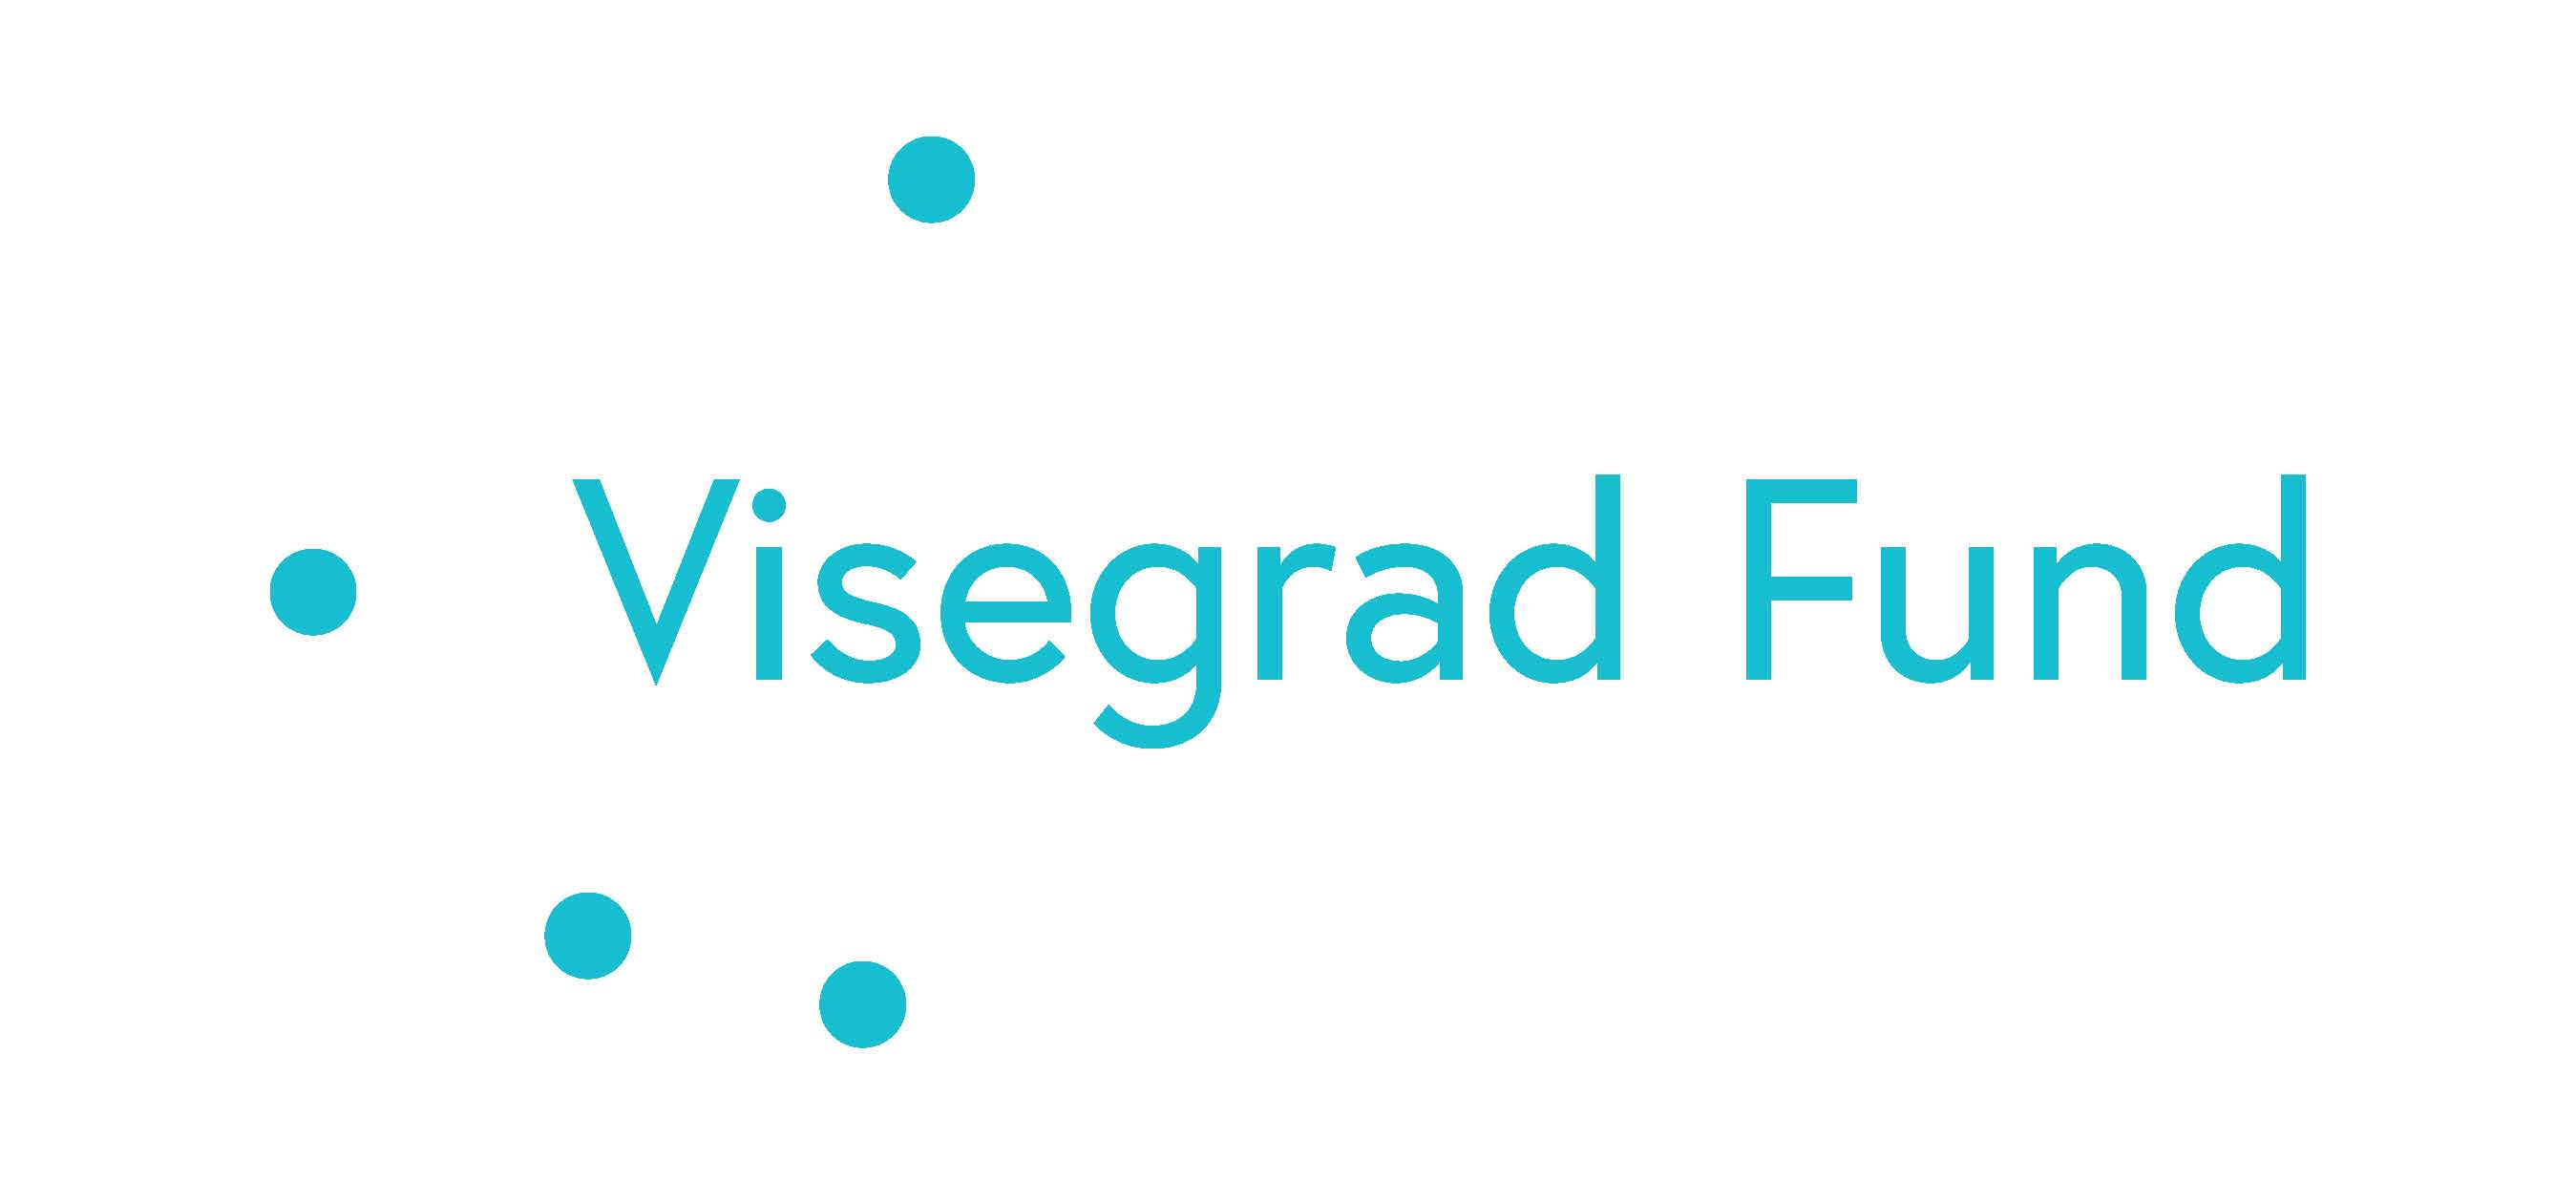 visegrad_fund_logo_blue_1.jpg